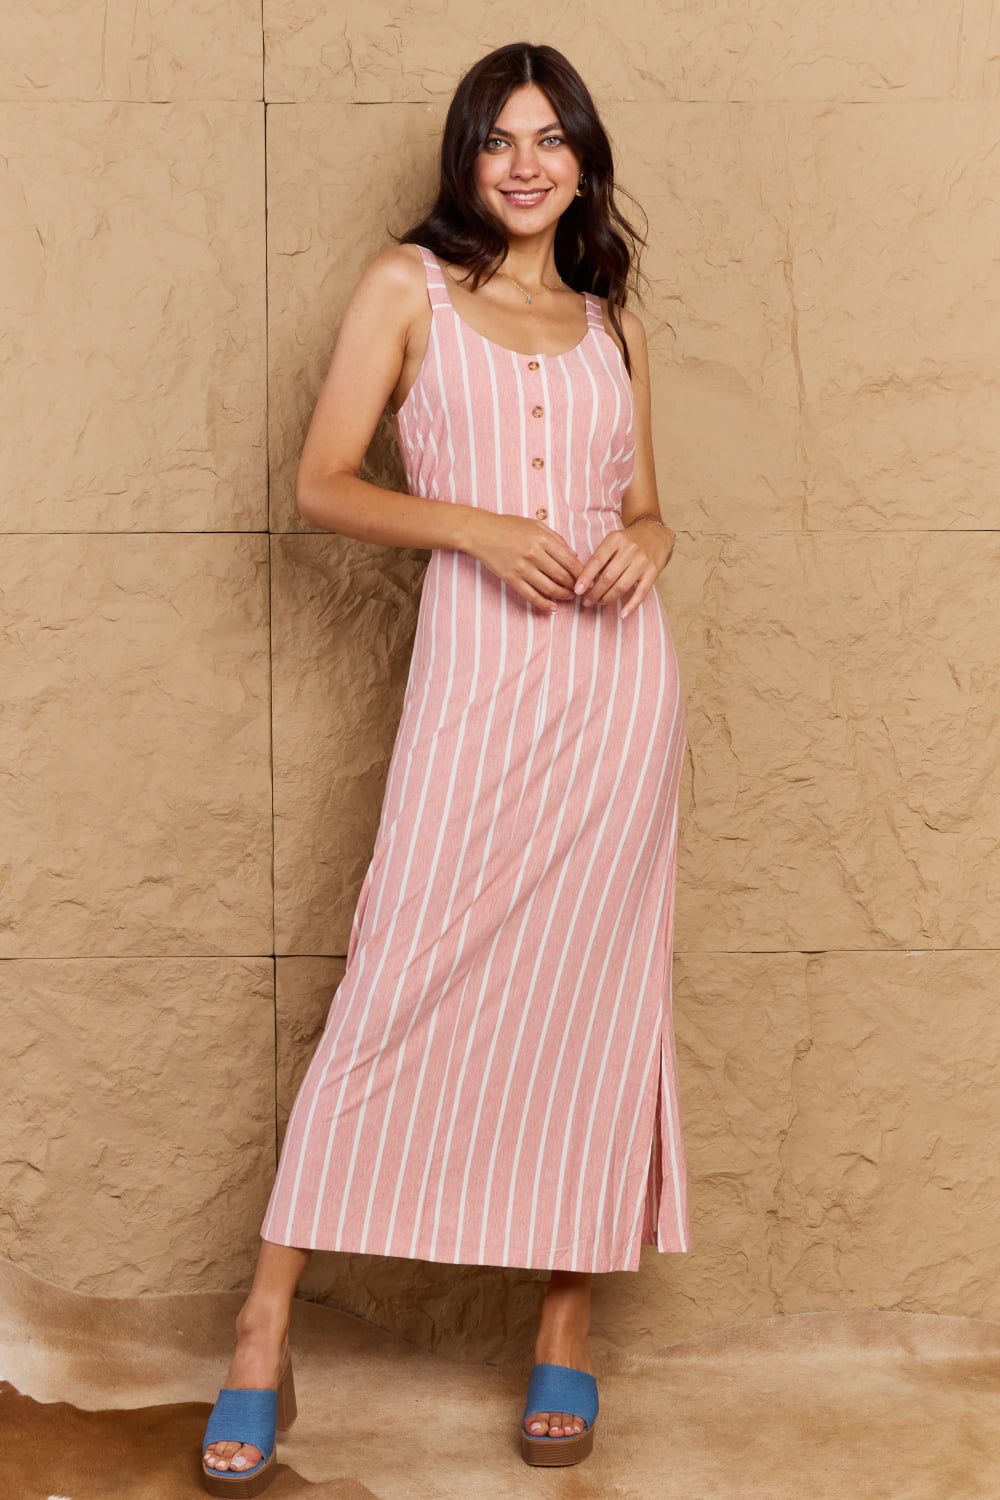 Bohemian OOTD Sweet Talk Stripe Texture Knit Maxi Dress in Dusty Pink/Ivory